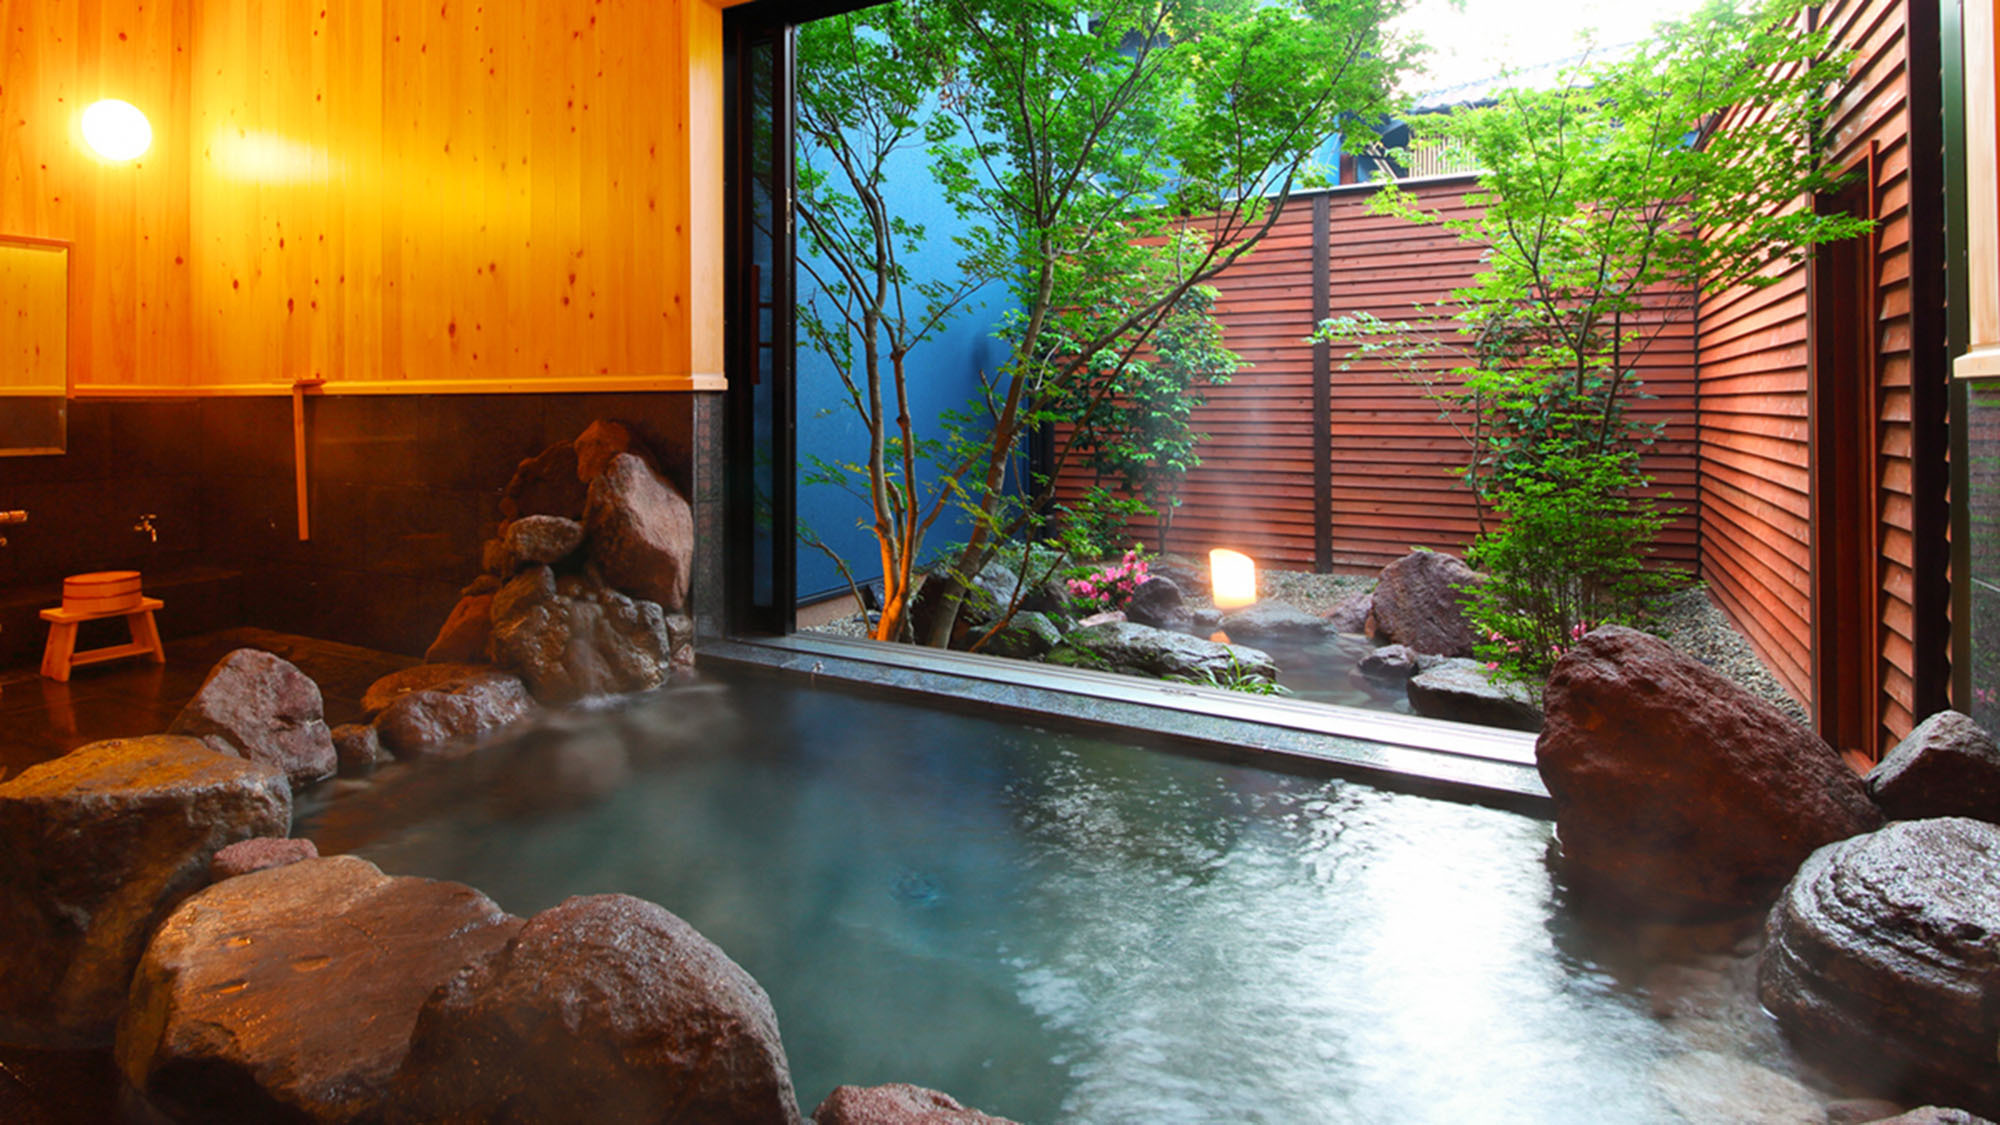 ・【文(ぶん)】檜の壁がやさしく香る内湯には個性豊かな石々で組まれた赴き深い岩風呂。